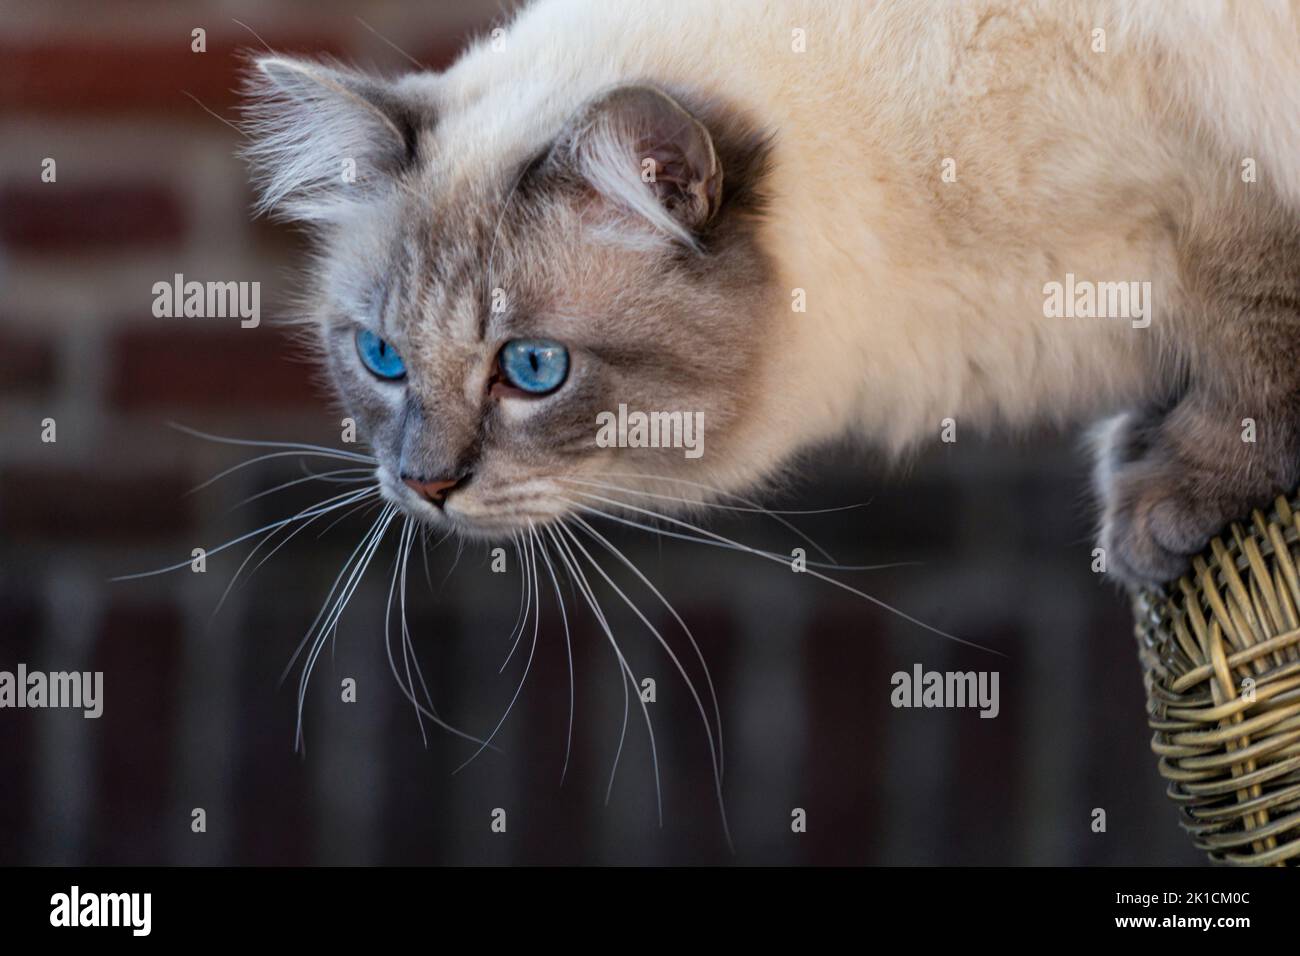 Siberian cat breed immagini e fotografie stock ad alta risoluzione - Alamy